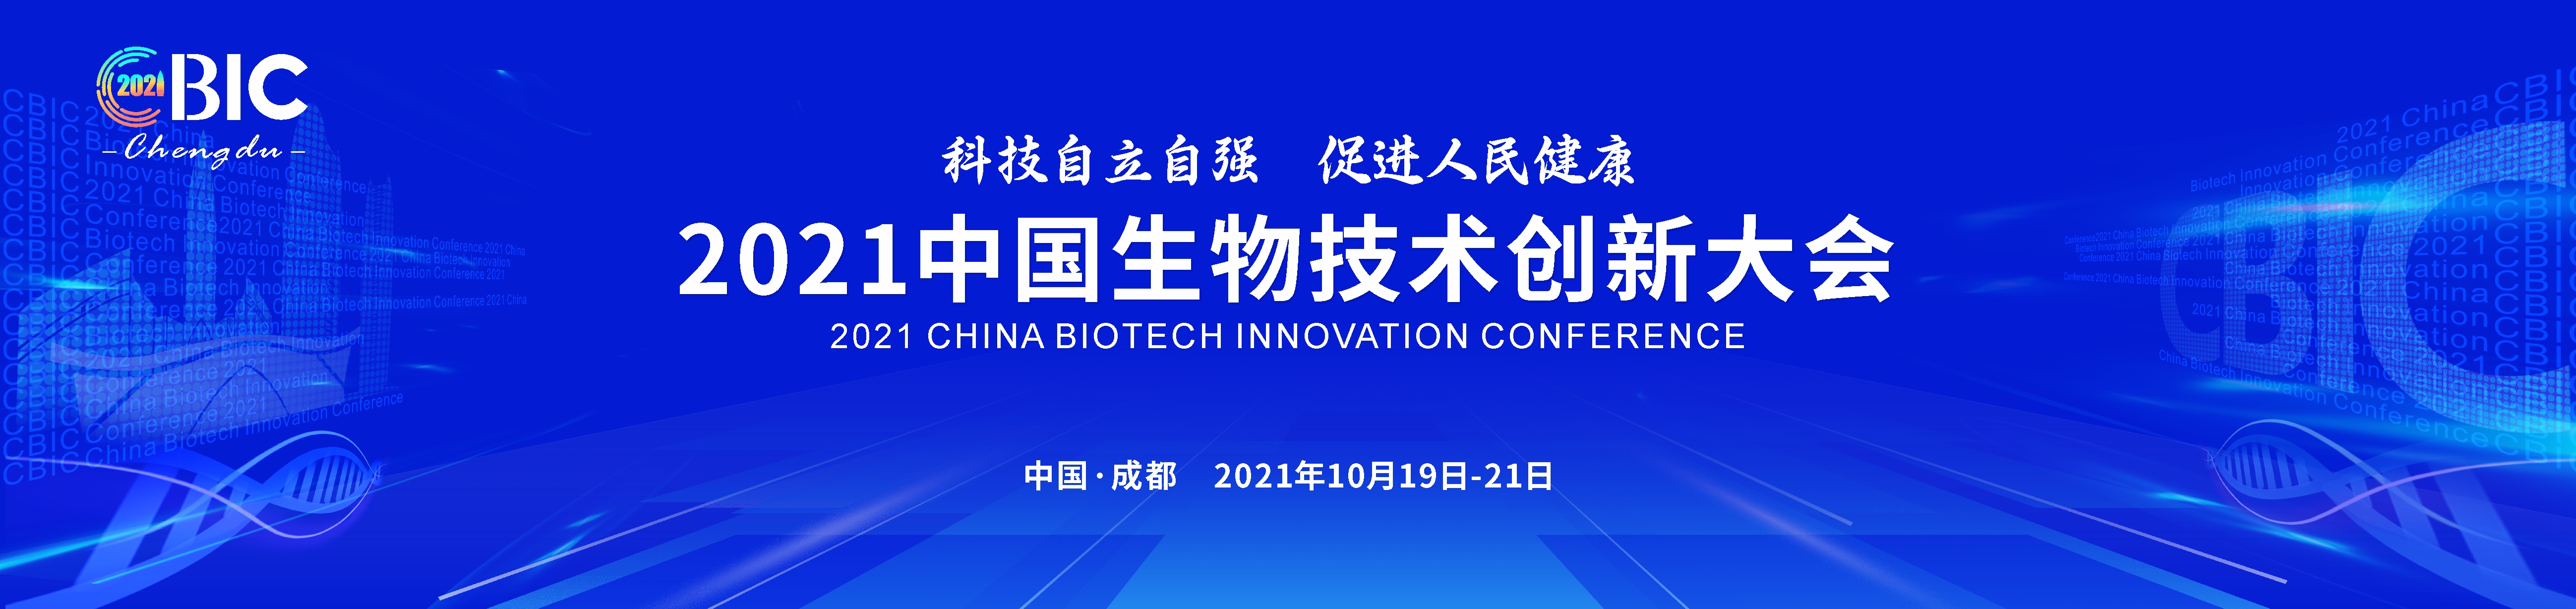 2021中国生物技术创新大会